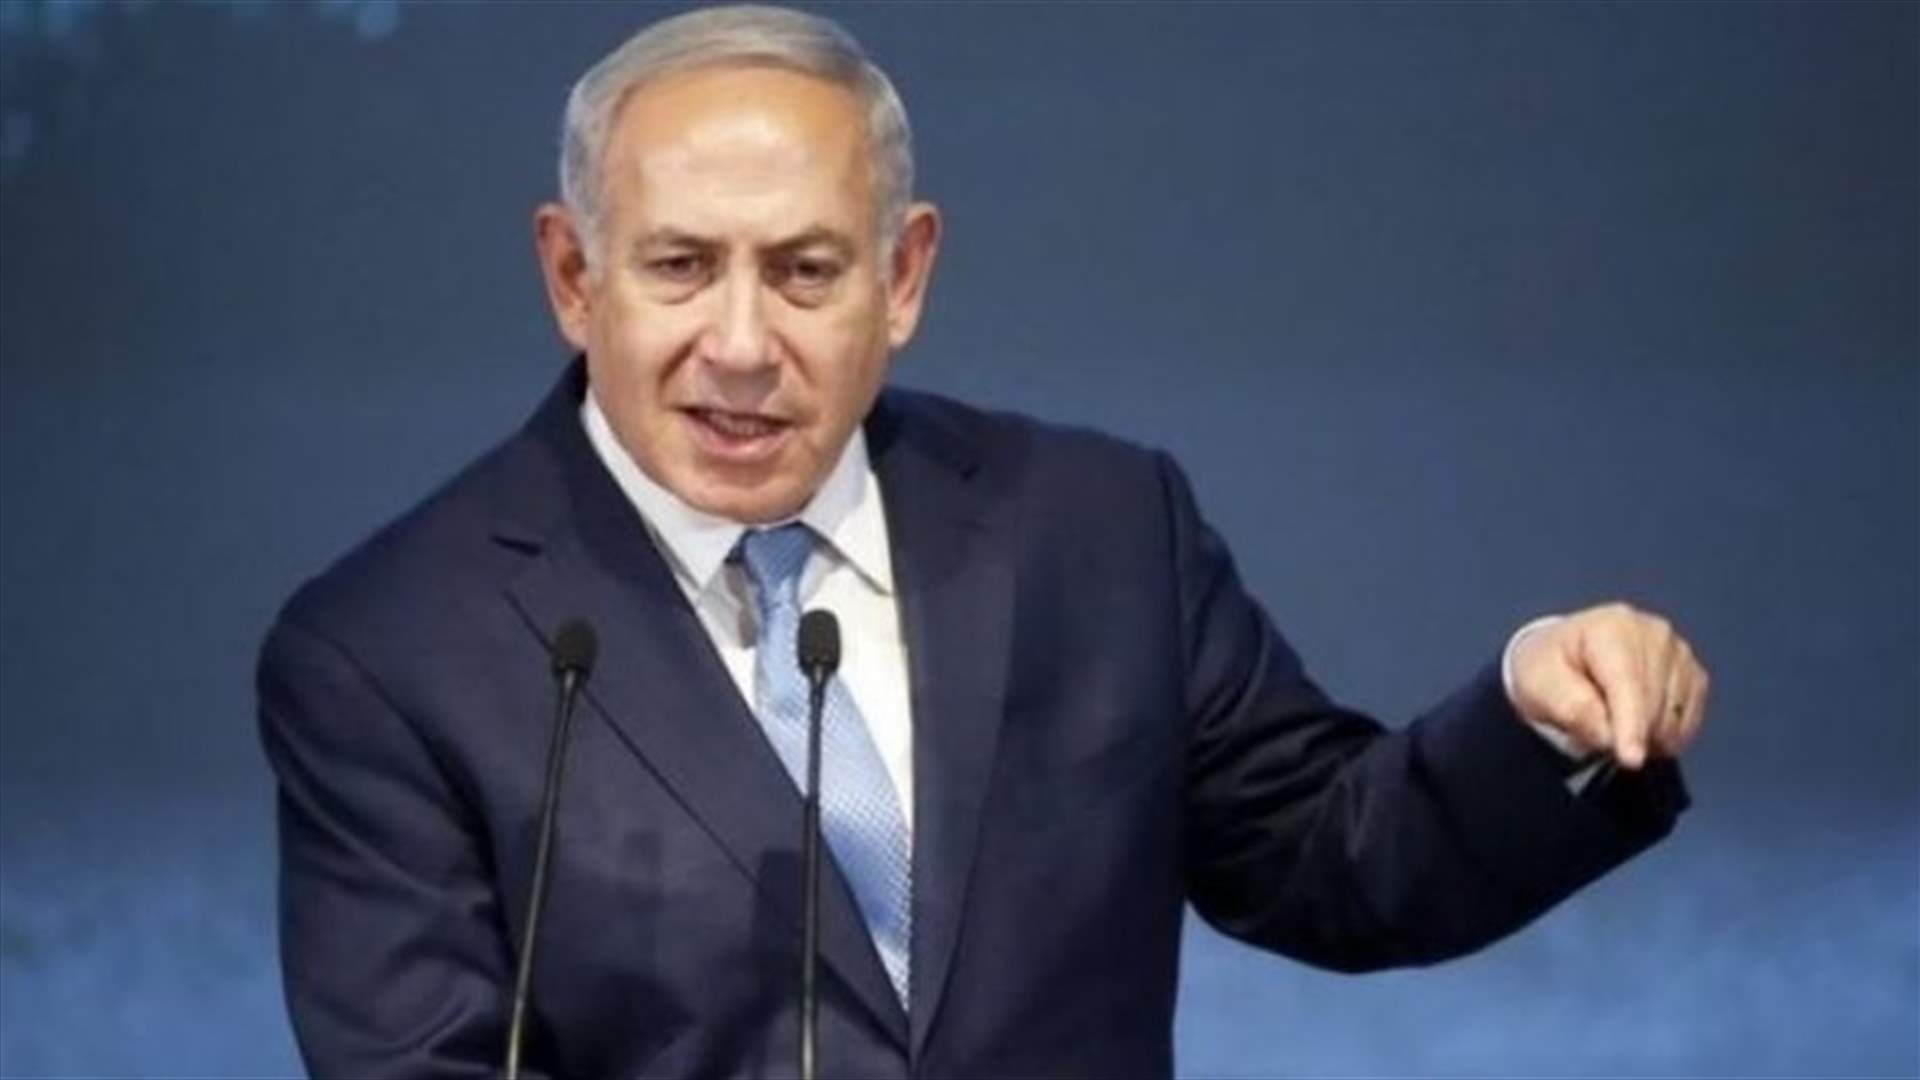 نتانياهو يرحّب بالموقف الأميركي إزاء المستوطنات